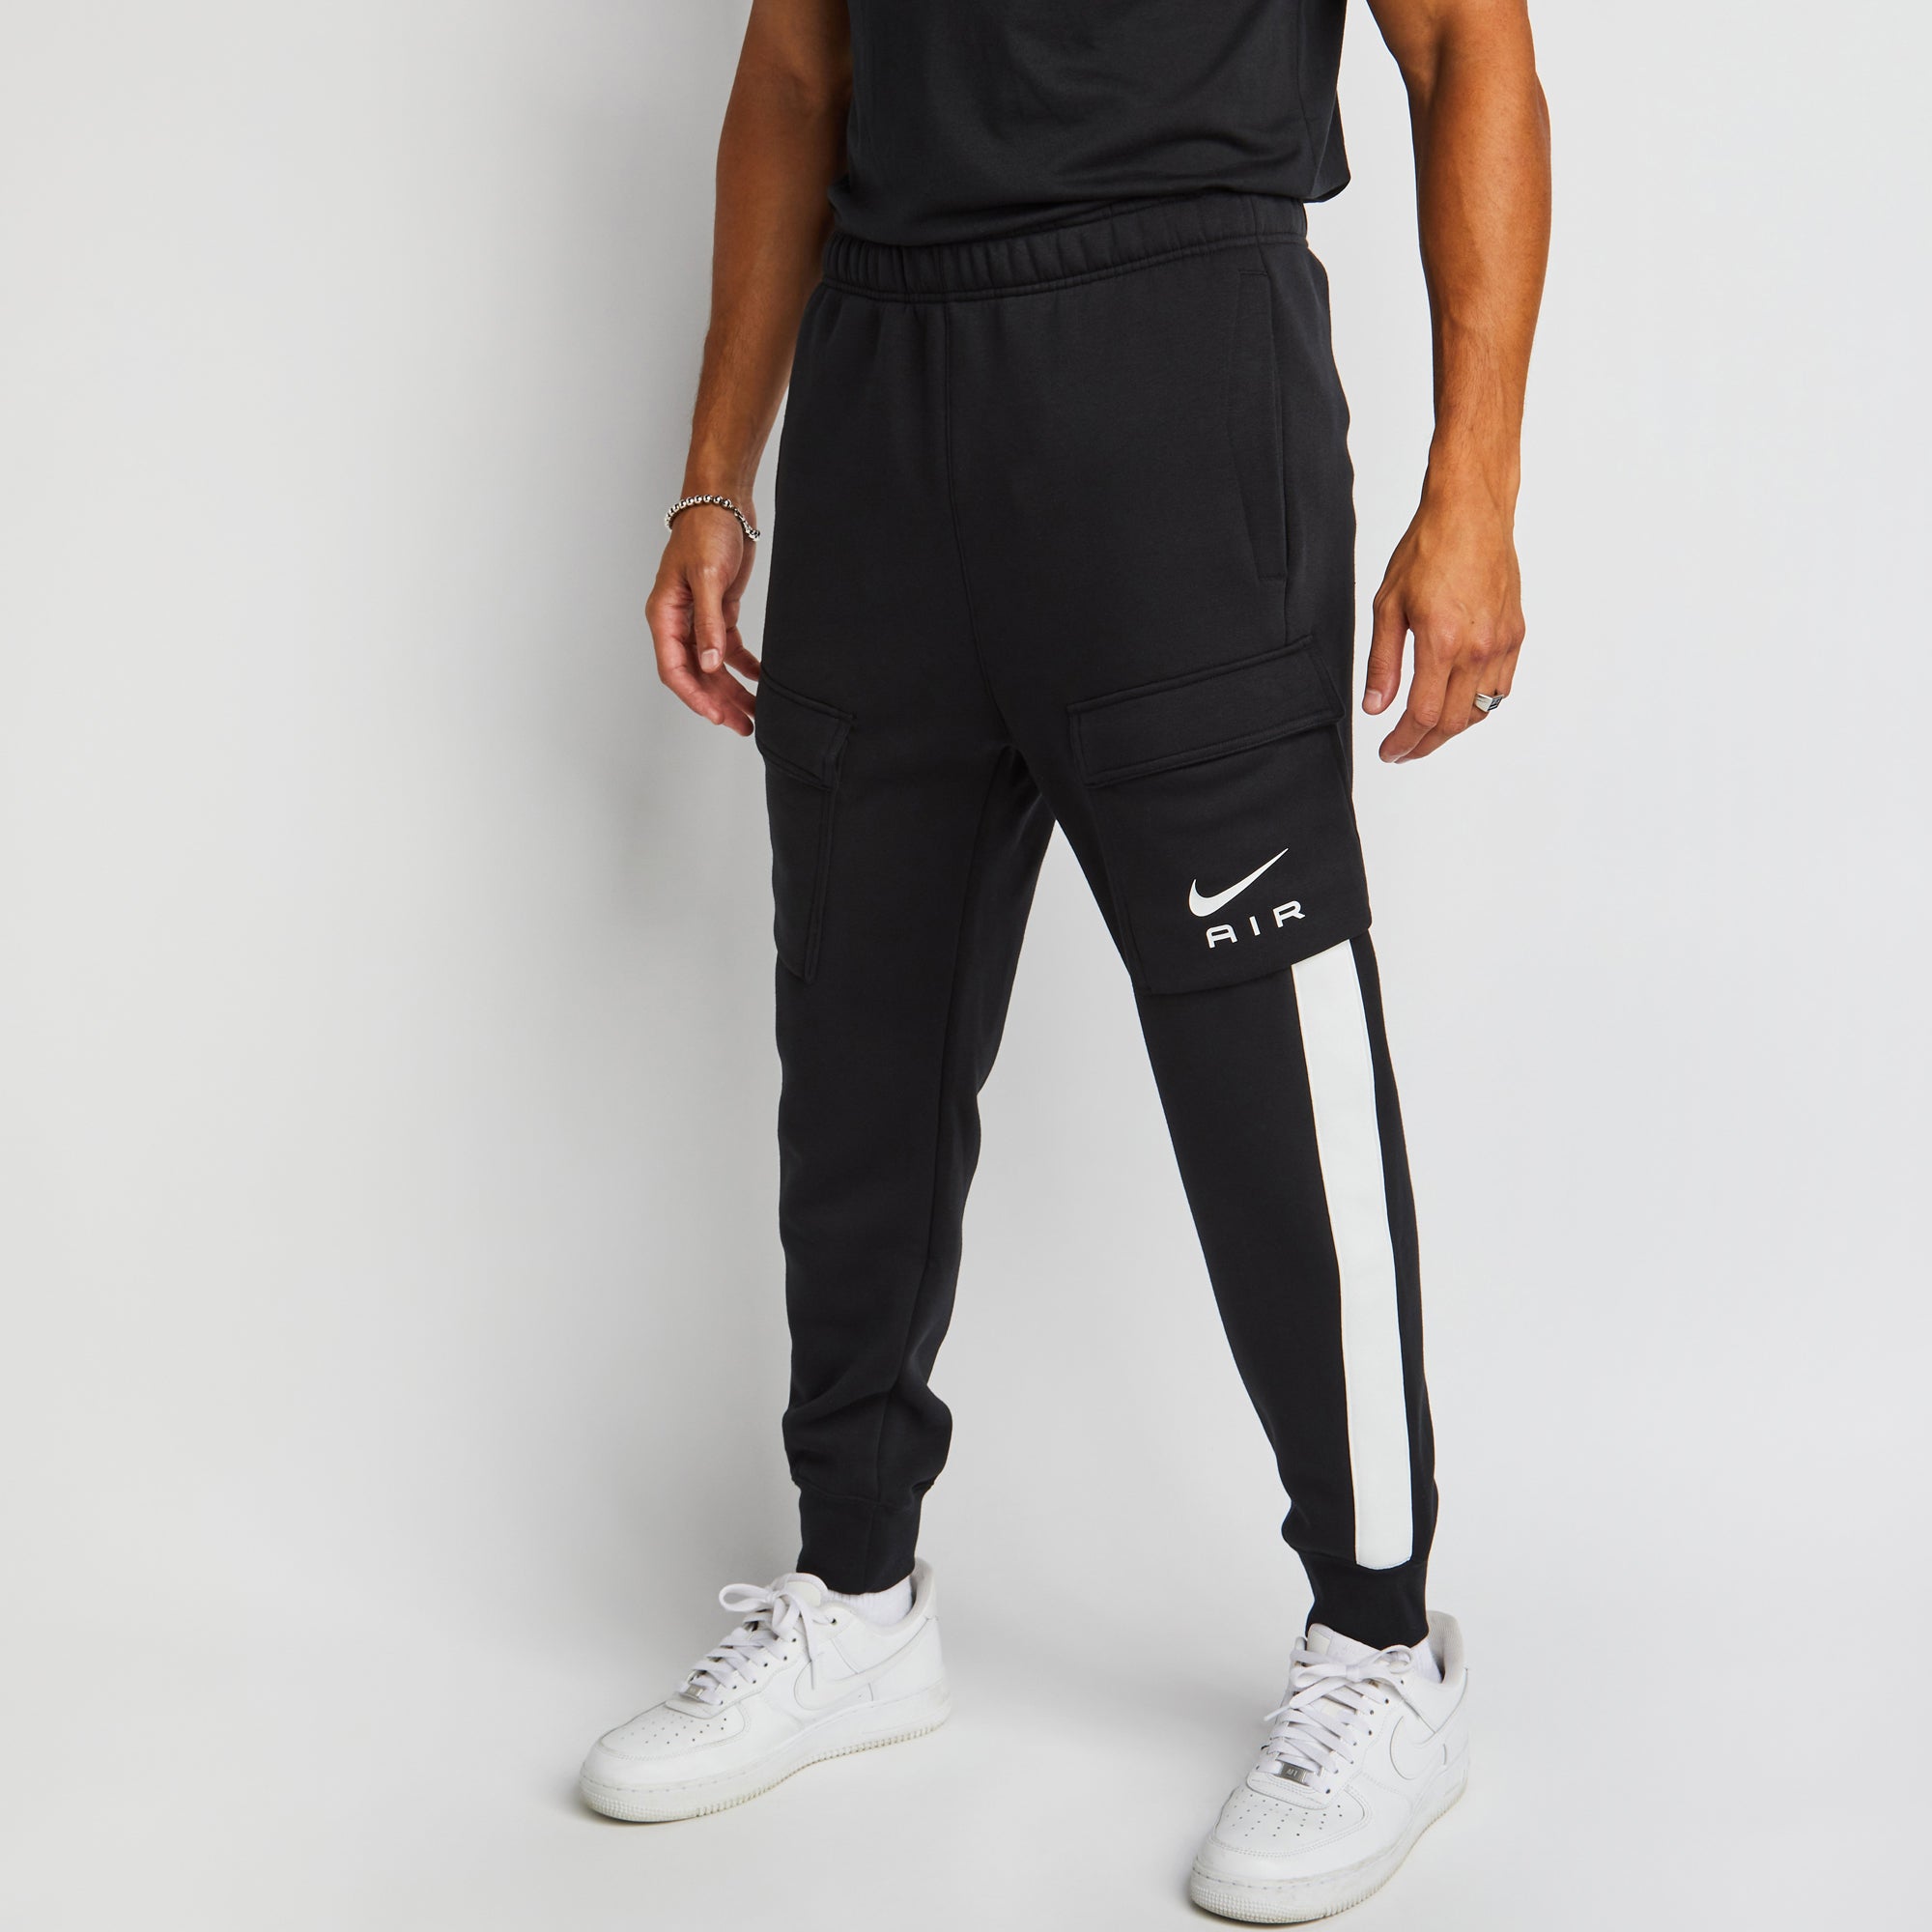 Buy Nike Swoosh Air - Men's Sweatpants online